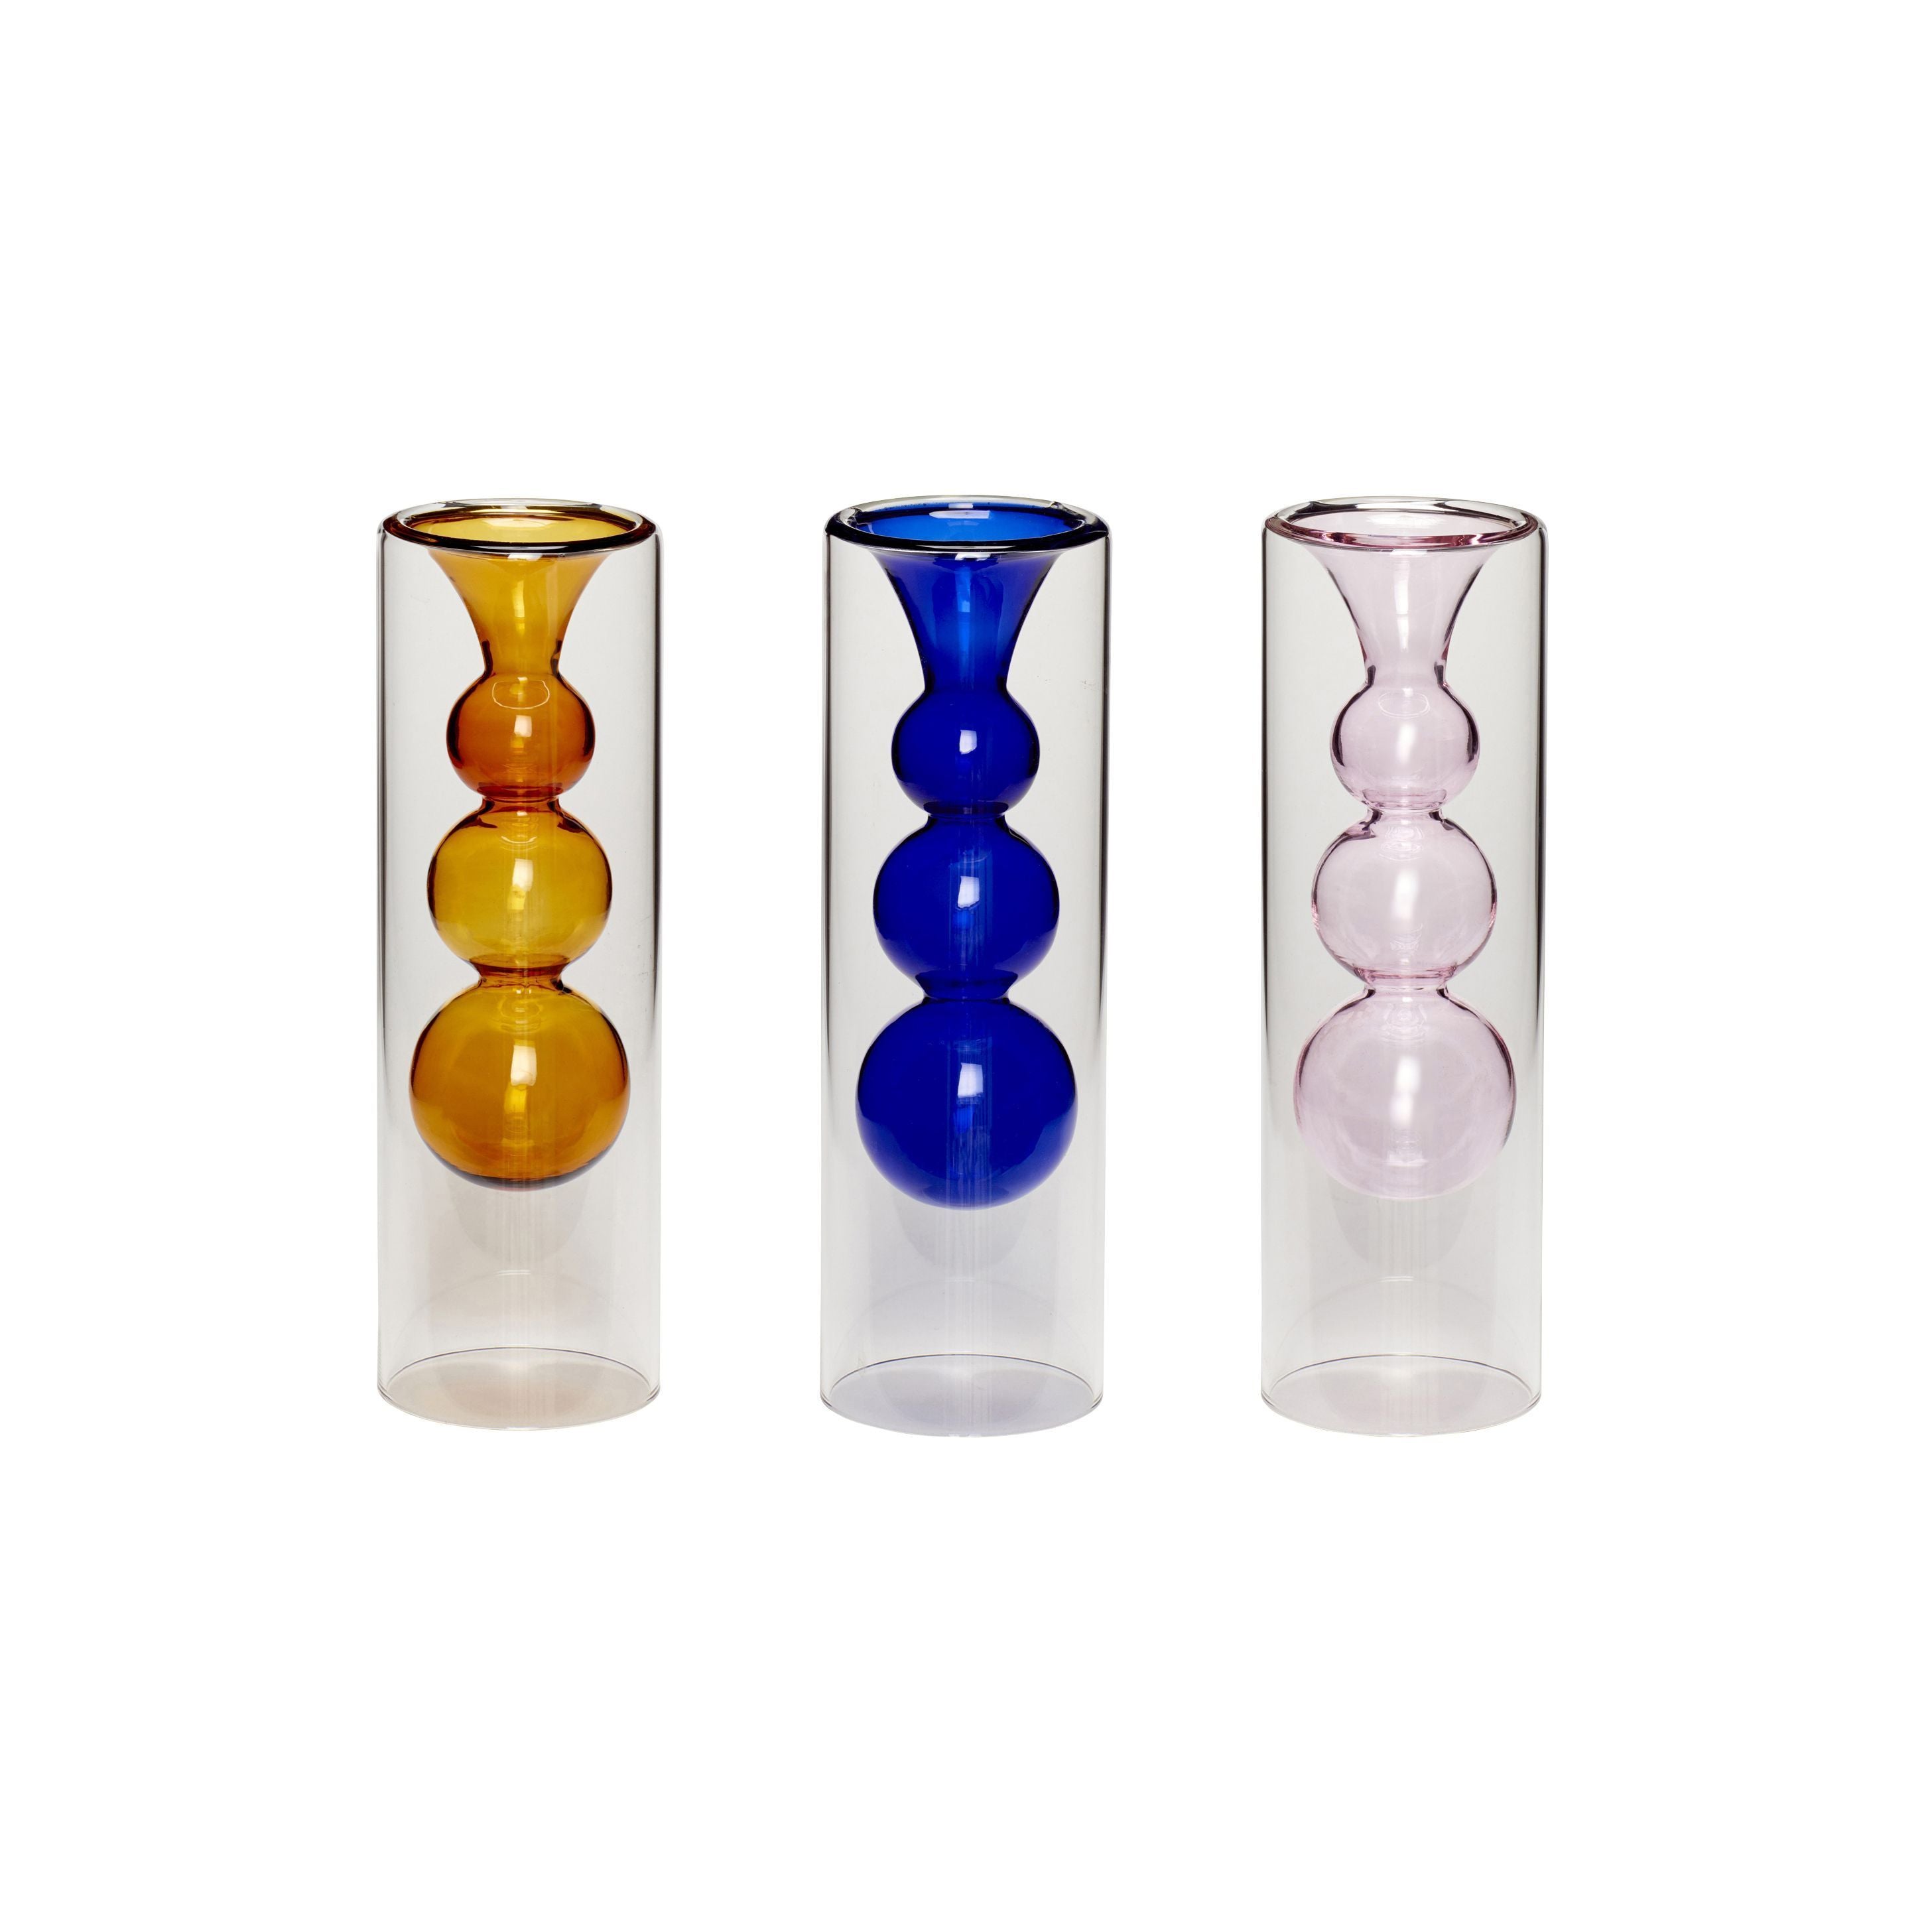 Hübsch Speel vaasglas amber/blauw/roze set van 3